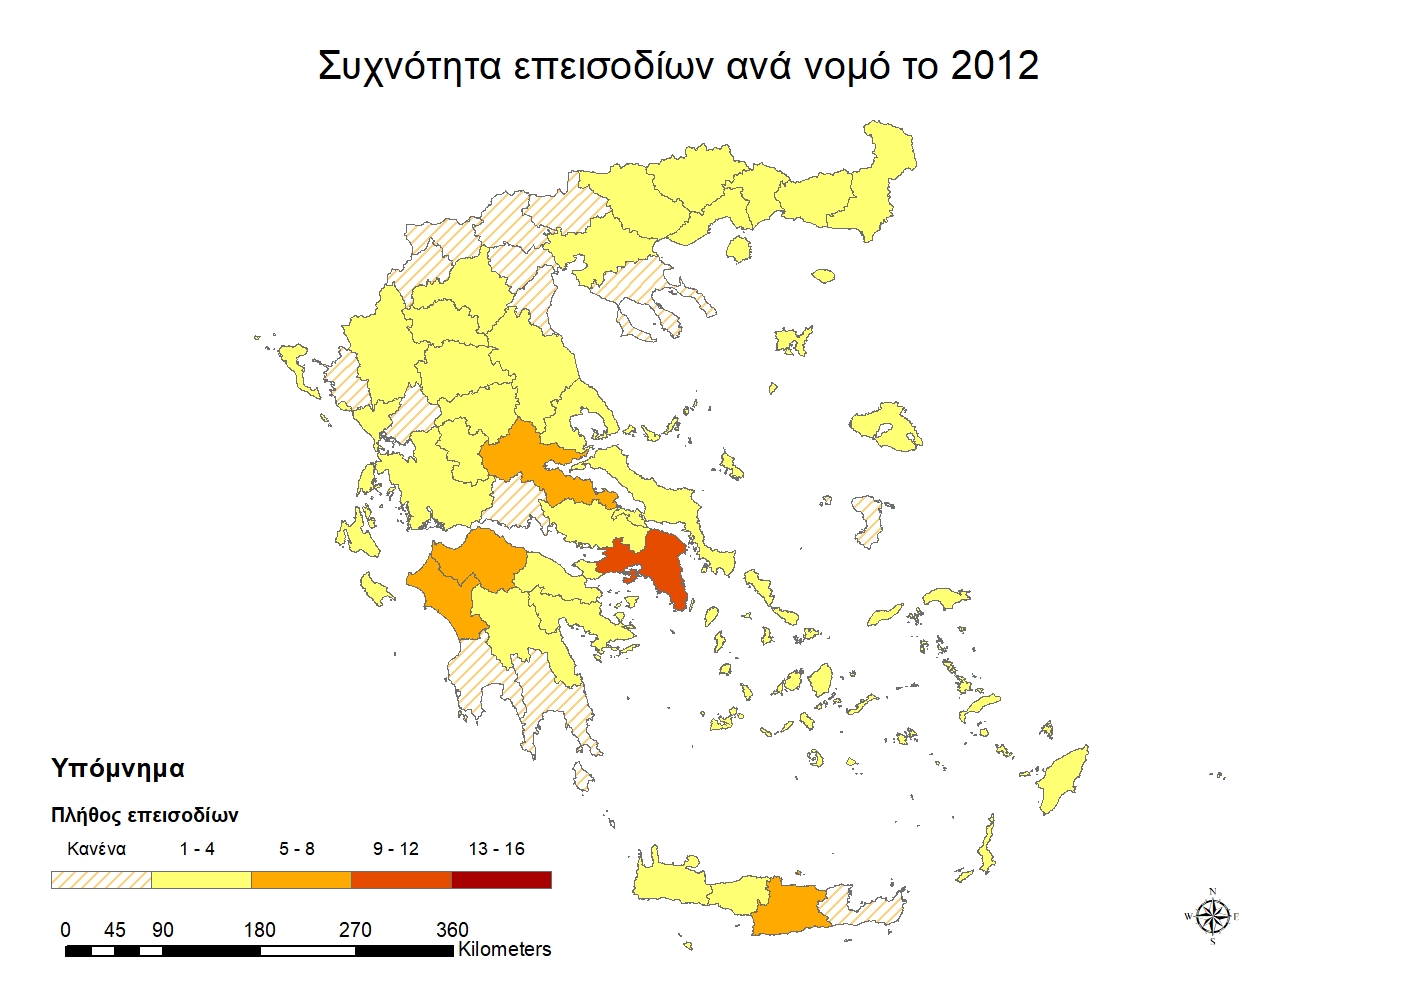 Χάρτης συχνότητας επεισοδίων ανά νομό για το έτος 2012